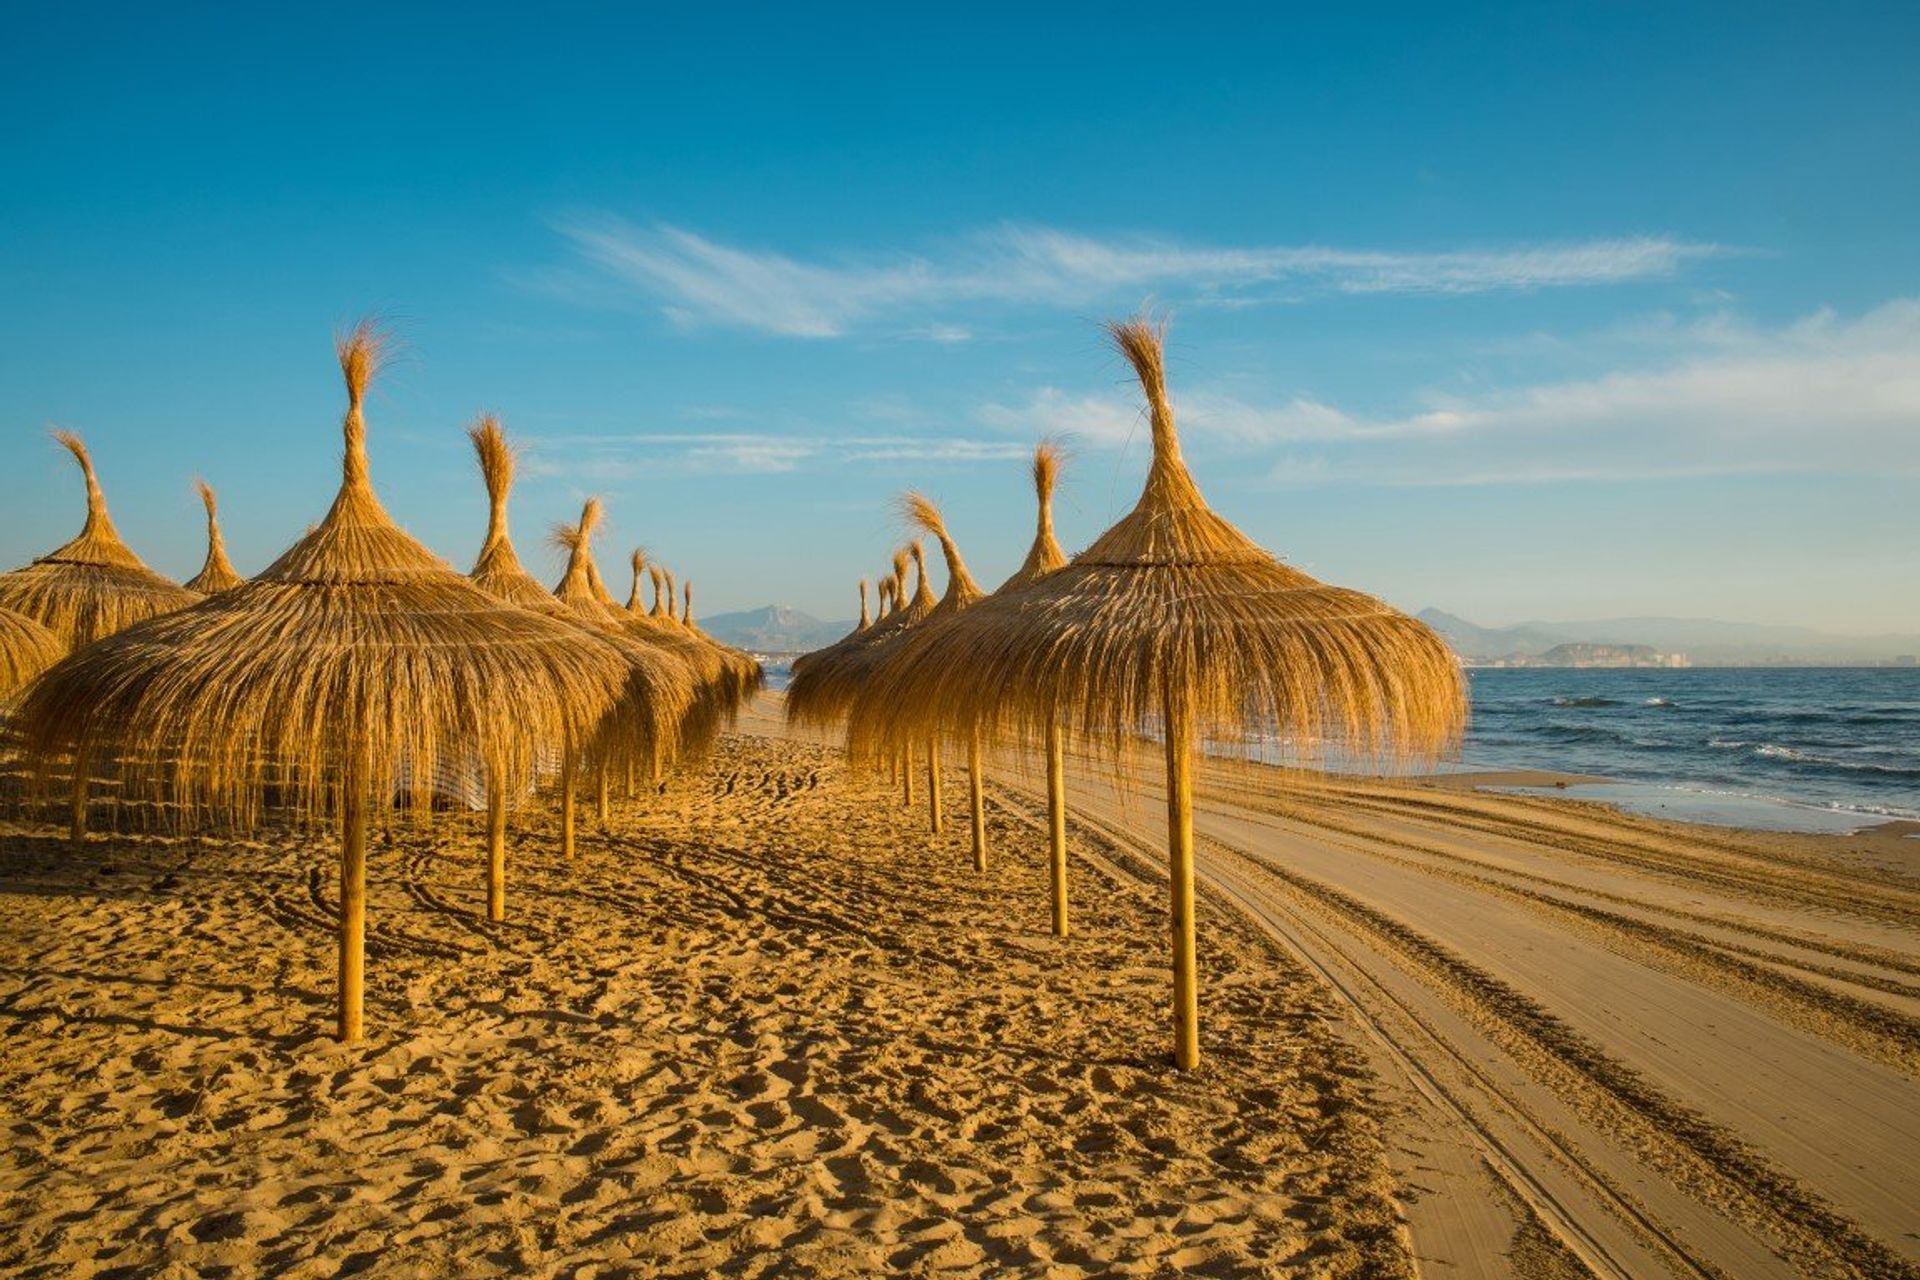 Santa Pola boasts both white and golden sand beaches, with 4km of coastline to enjoy